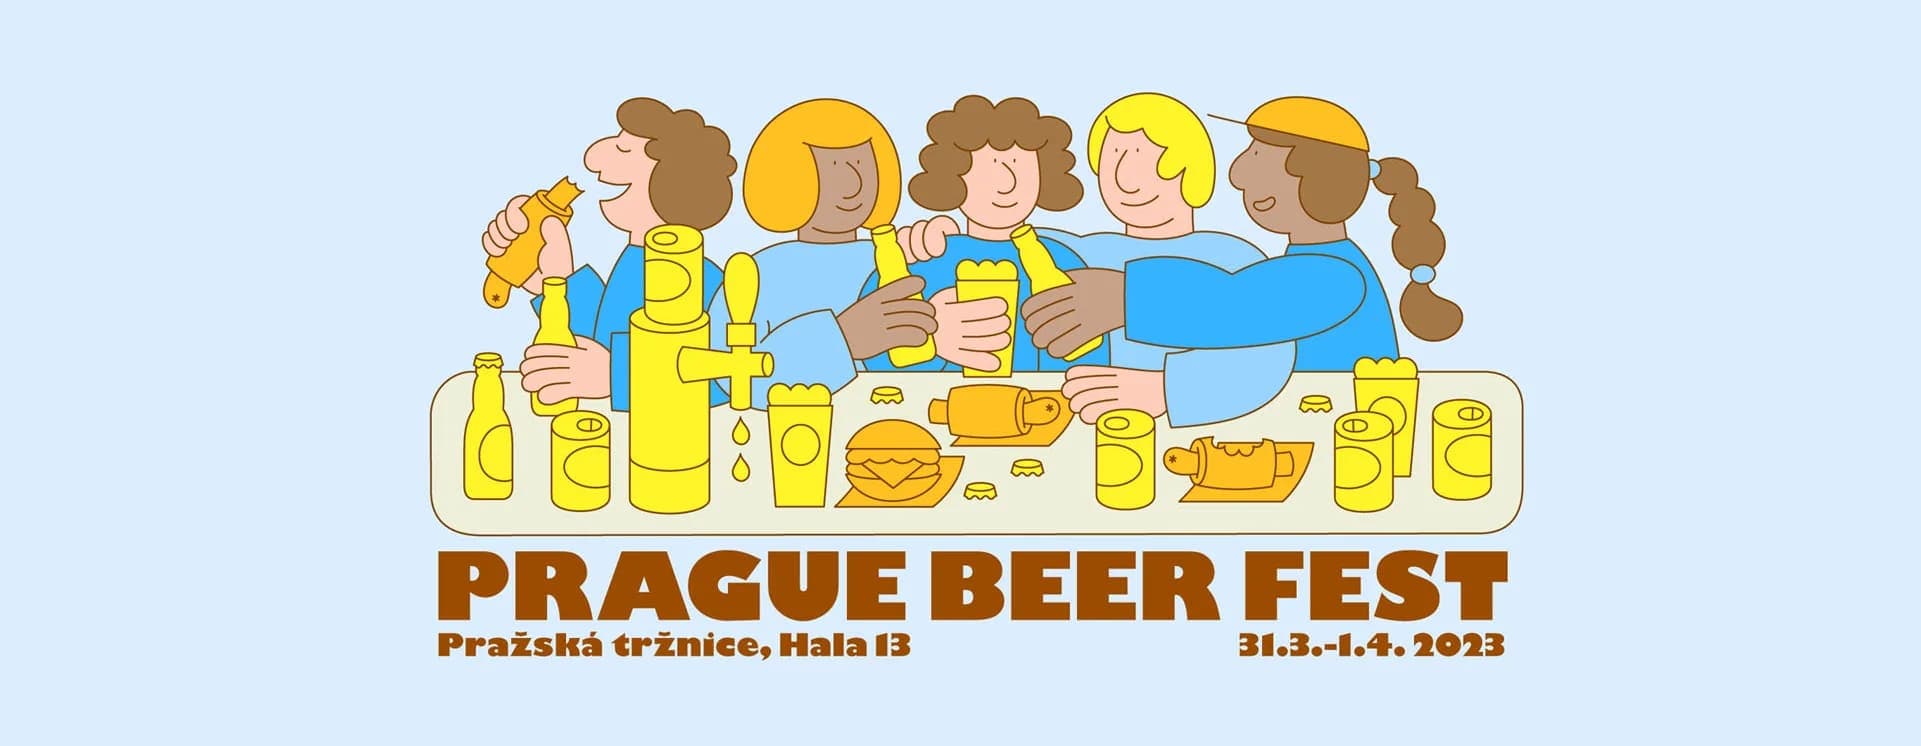 С 31 марта по 1 апреля в Праге пройдет фестиваль пива Prague Beer Fest 2023